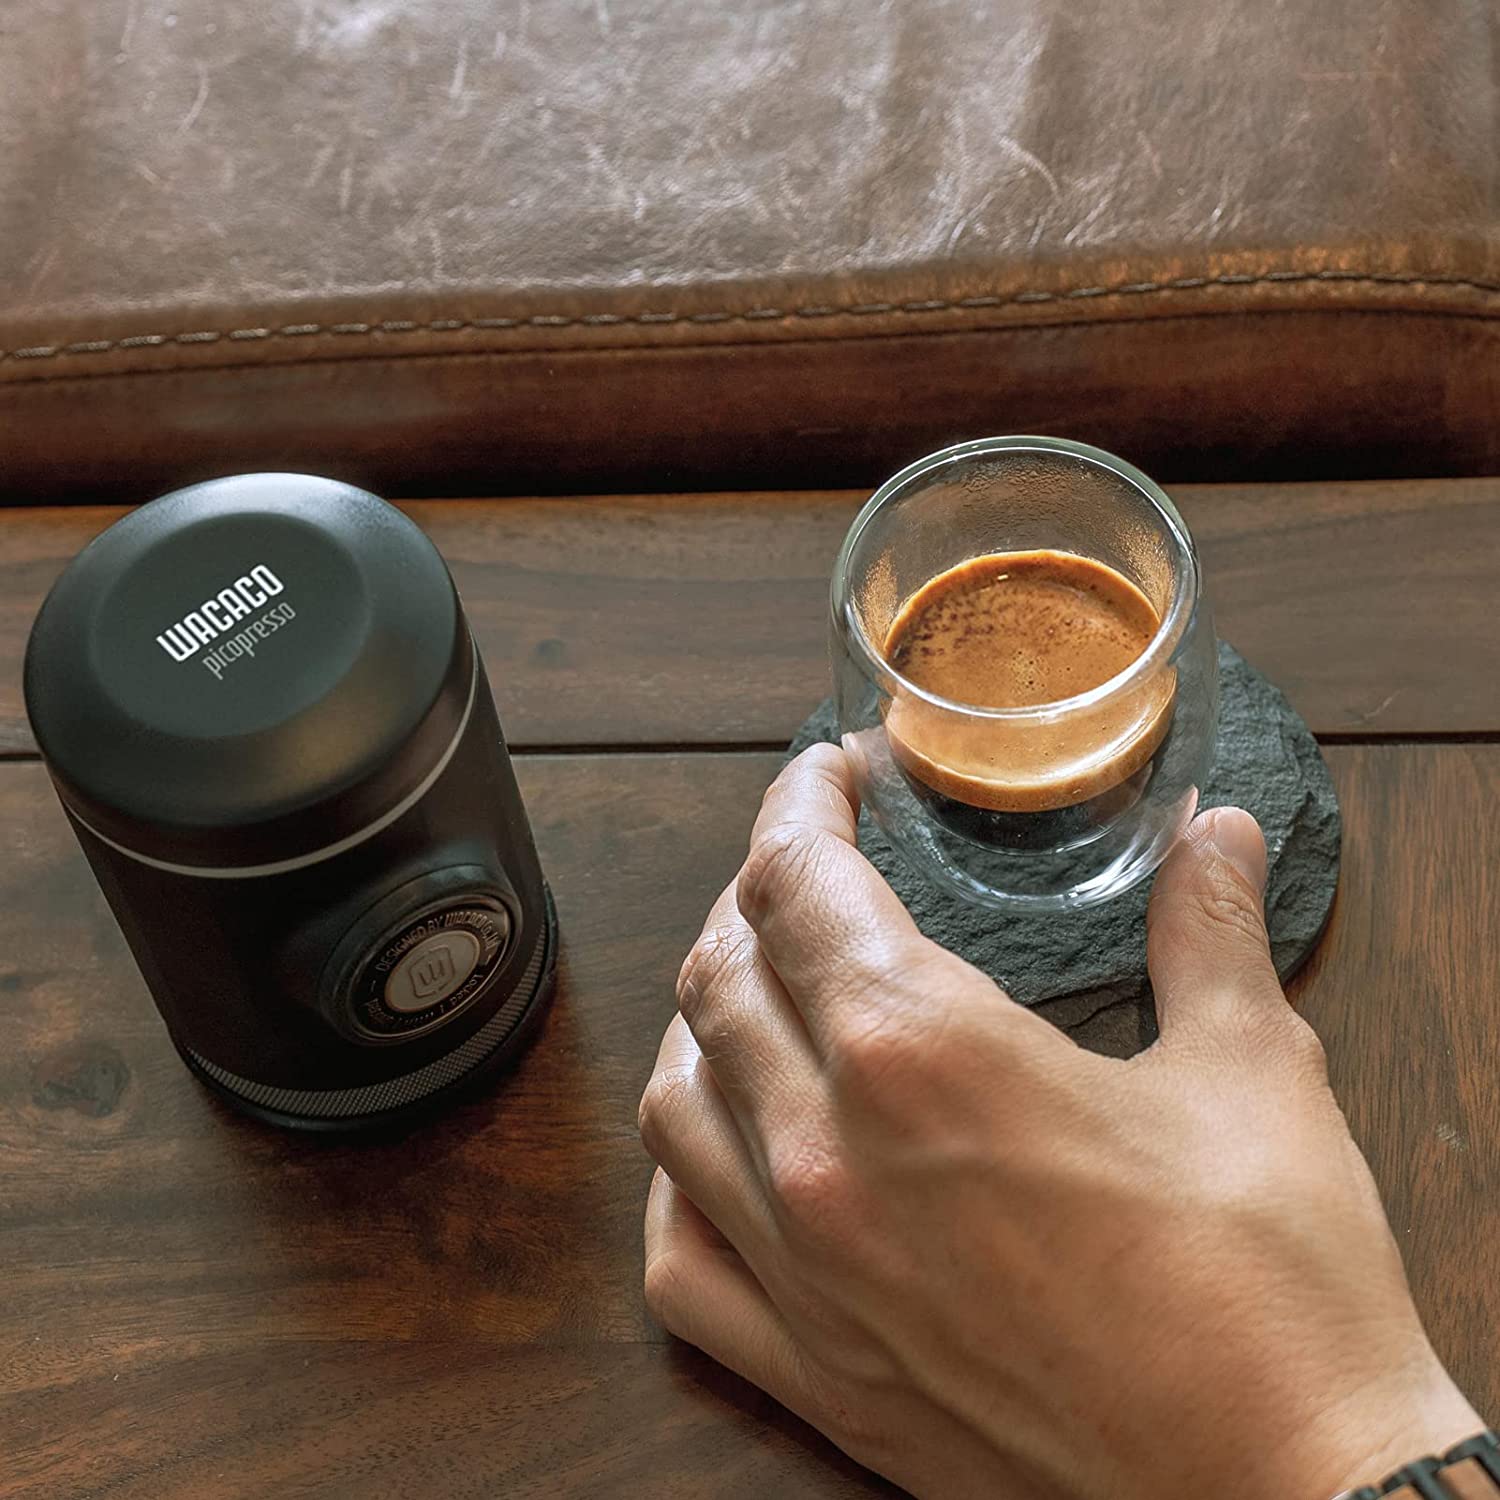 World's Smallest Espresso Machine Picopresso